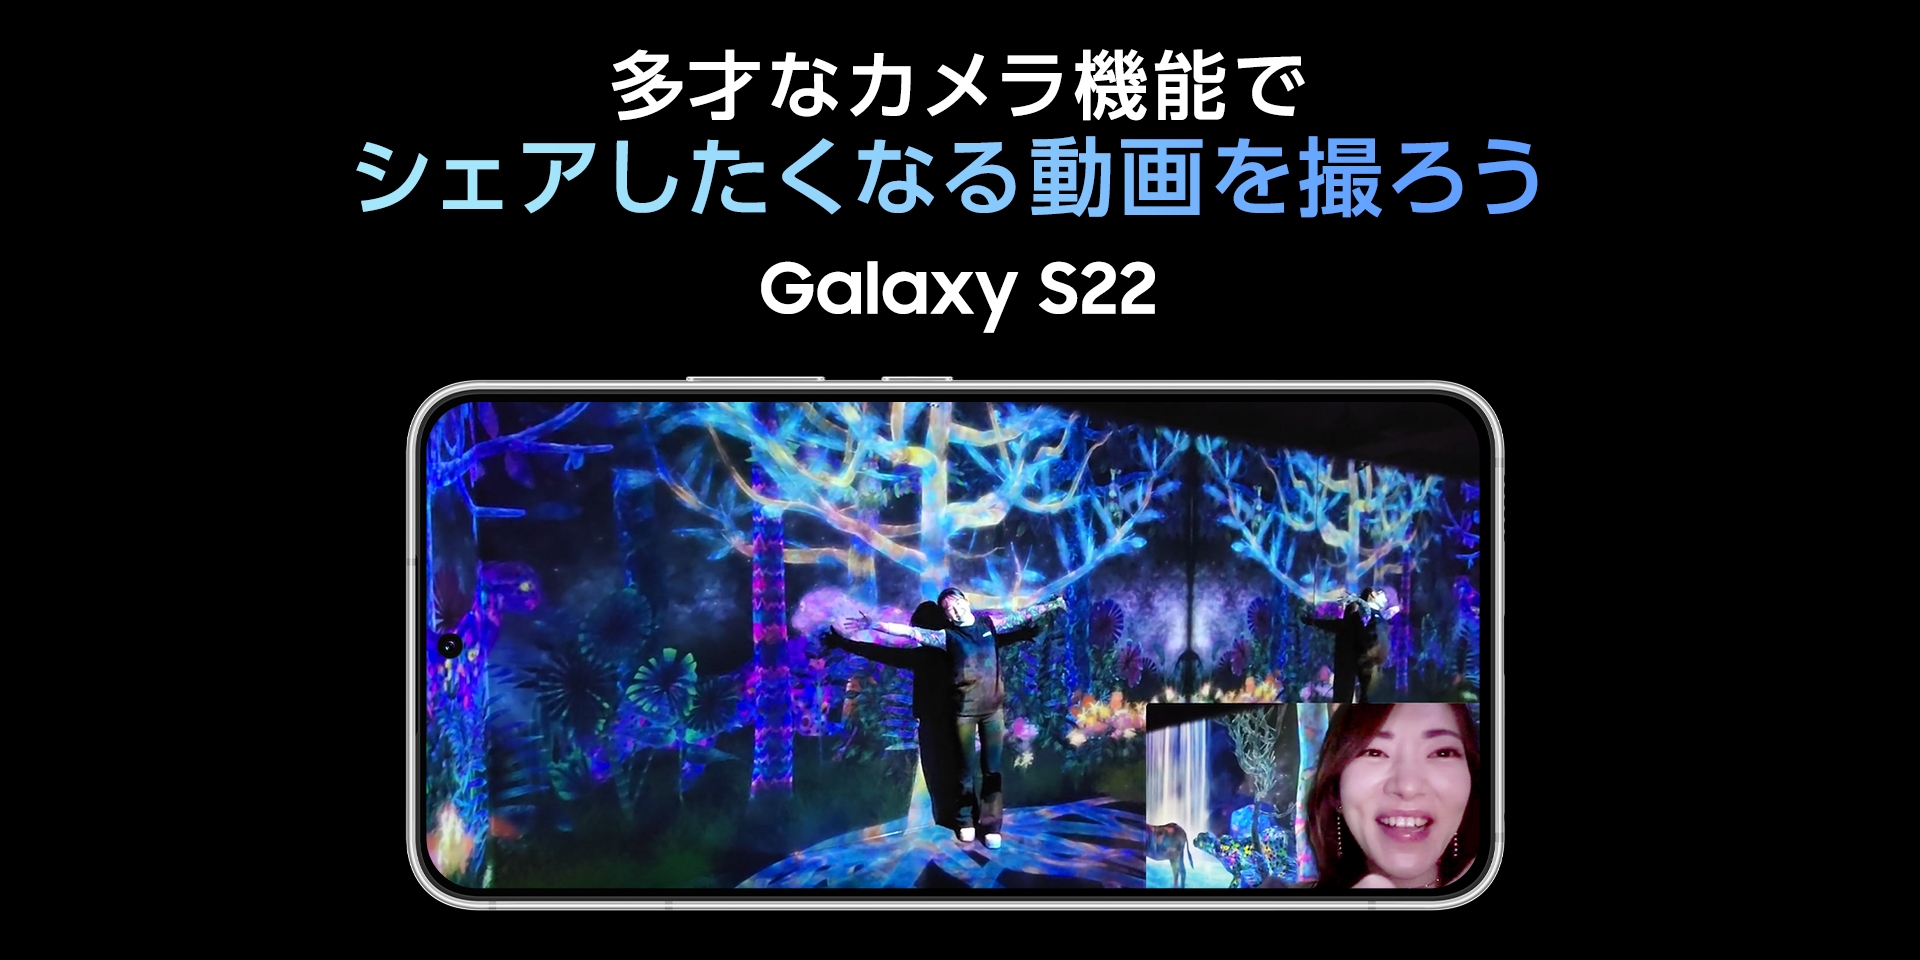 多才なカメラ機能でシェアしたくなる動画を撮ろう Galaxy S22